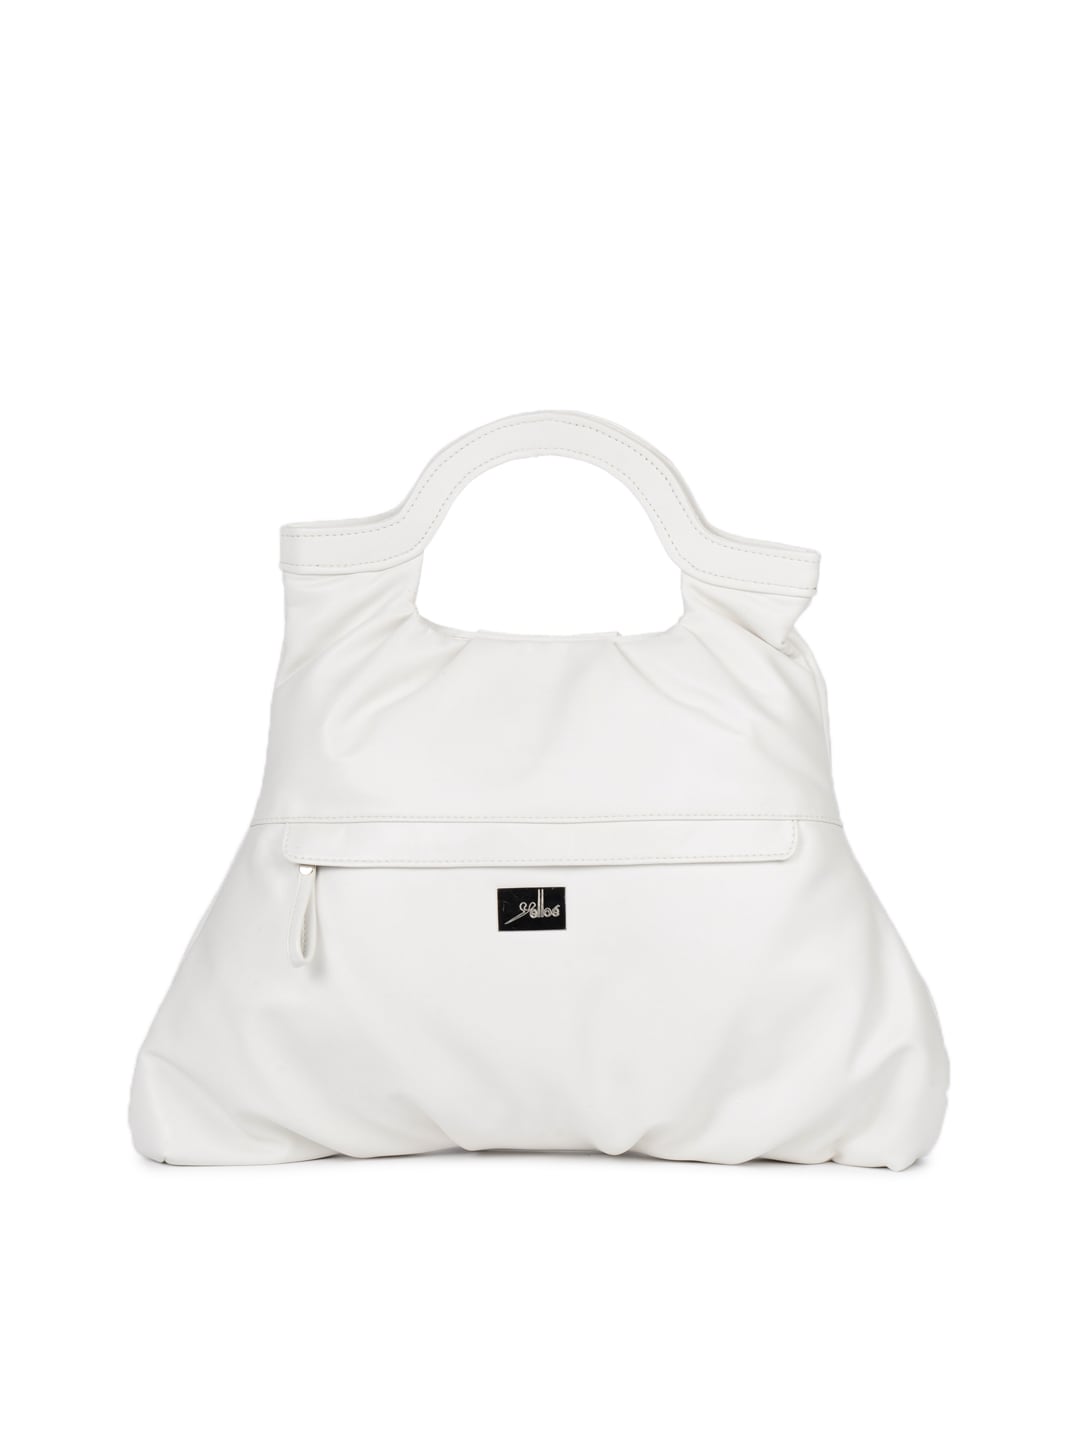 Yelloe Women Class and Elegance Redefined White Handbag